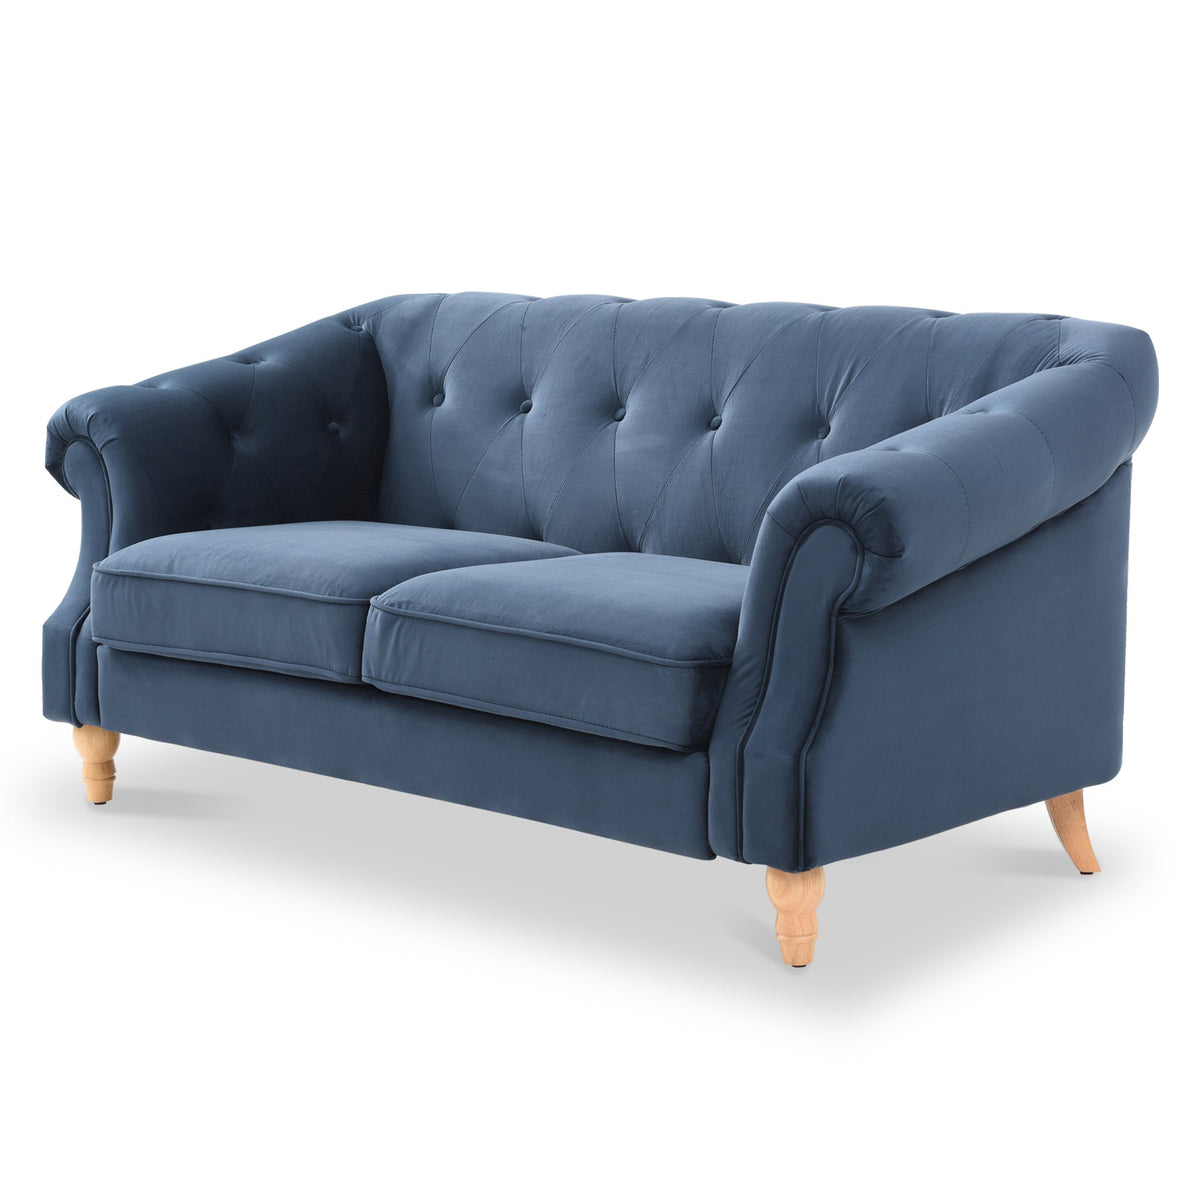 Darius Navy Blue Chesterfield Velvet 3 Seater Sofa from Roseland Furniture